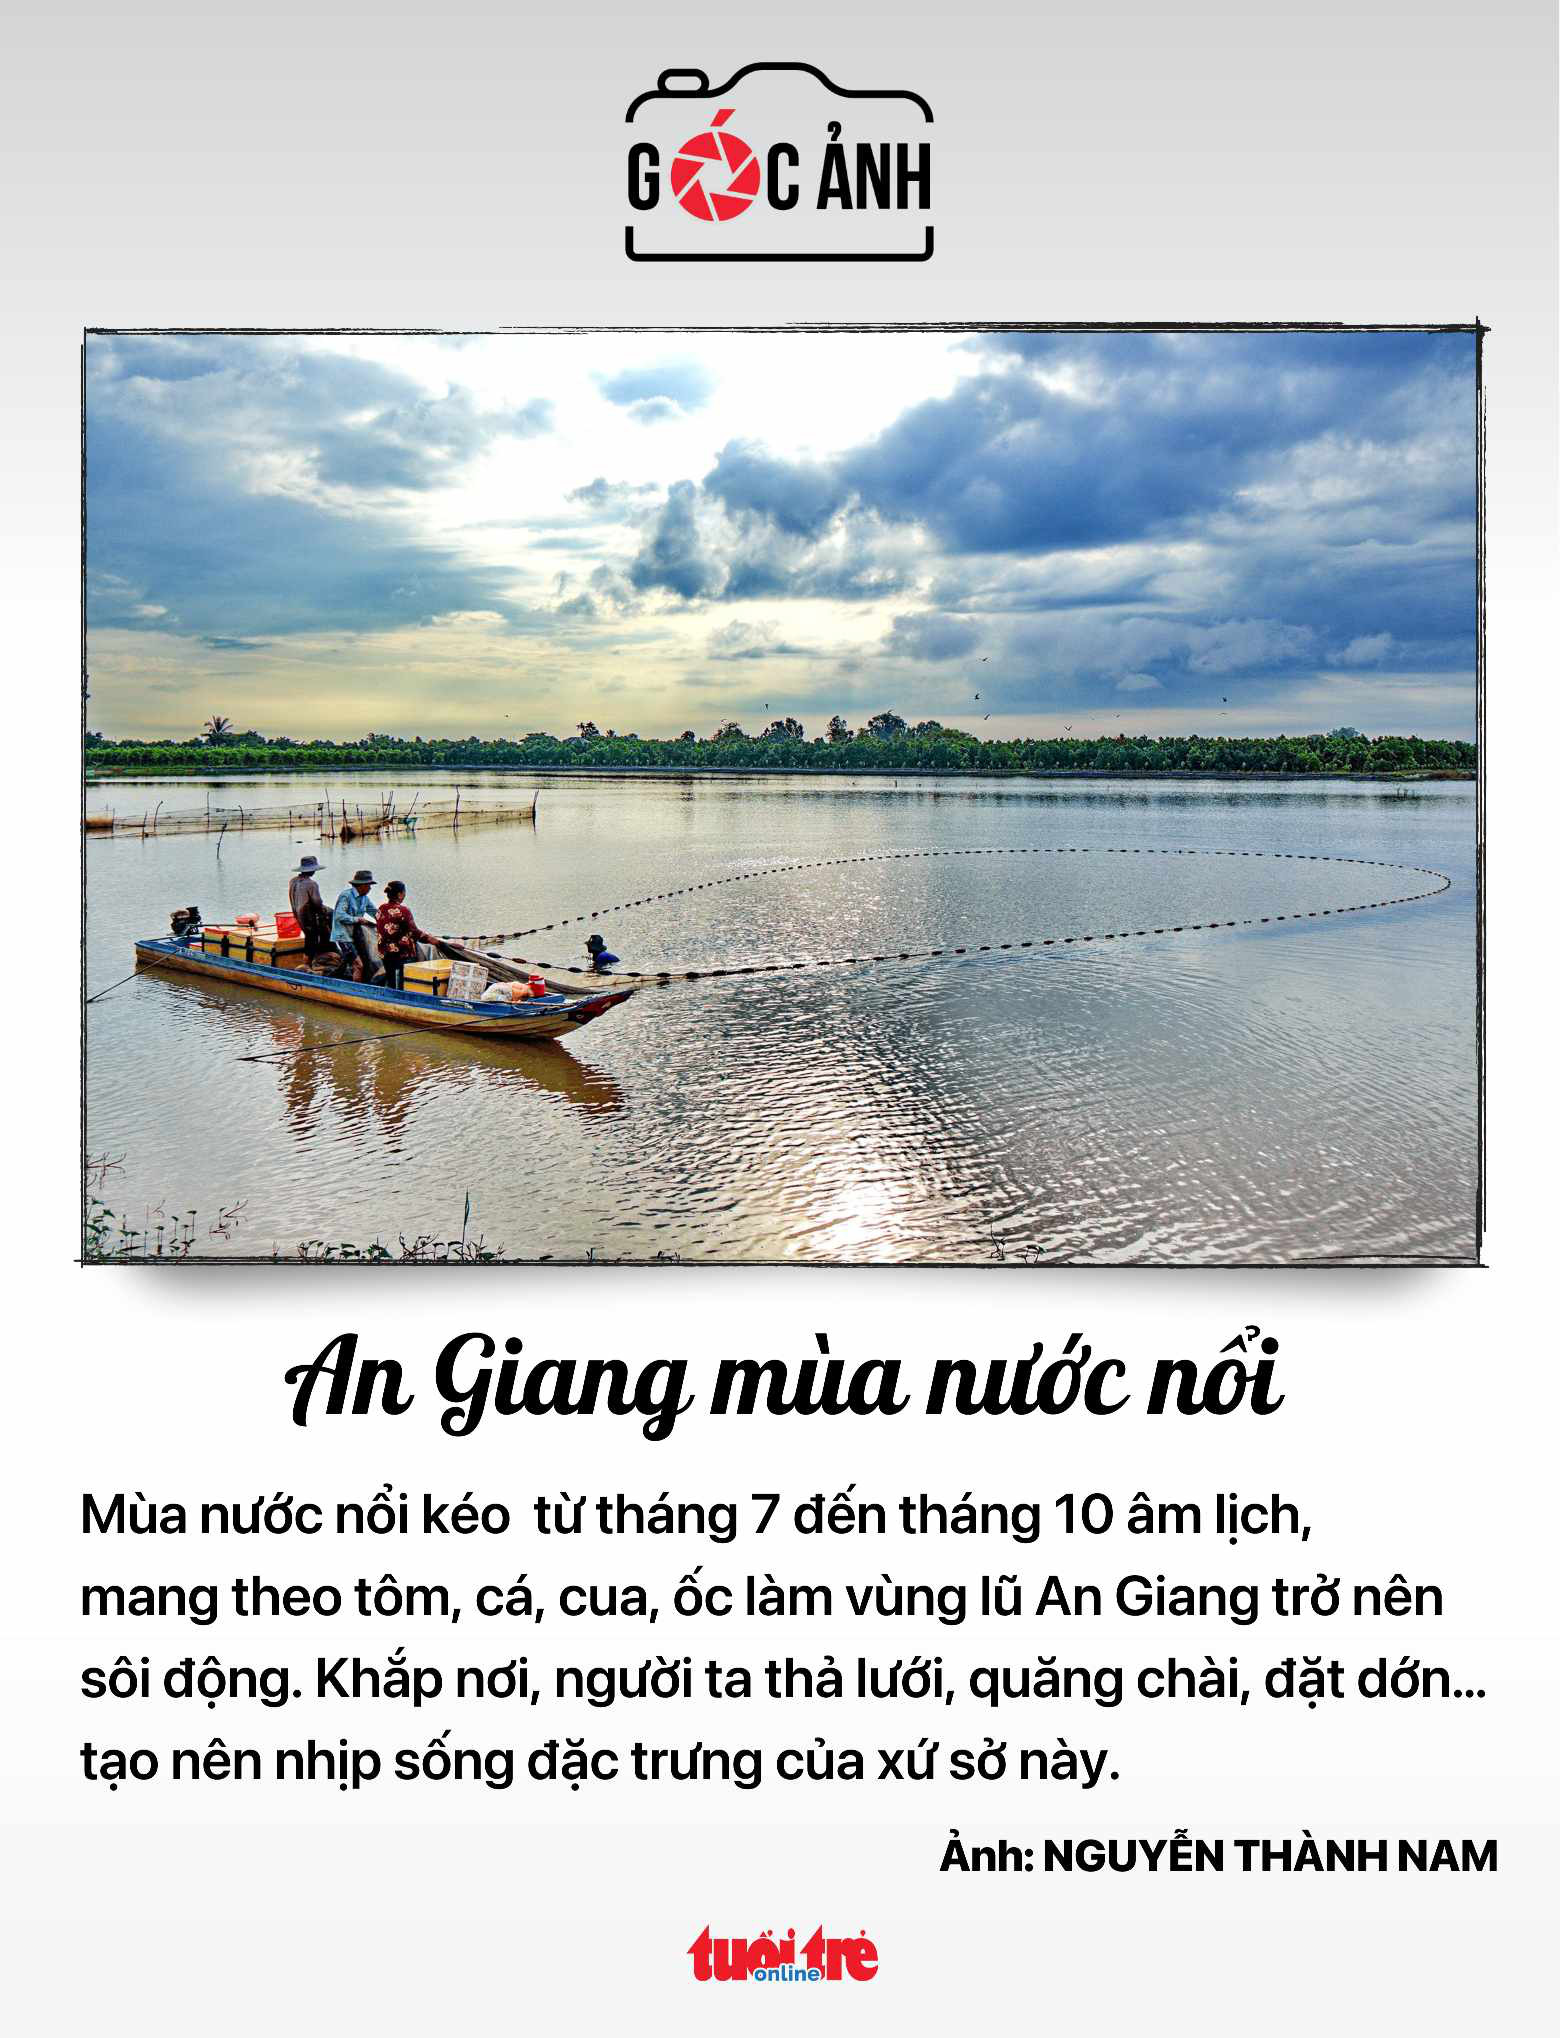 アンザンの洪水期 - 写真: NGUYEN THANH NAM